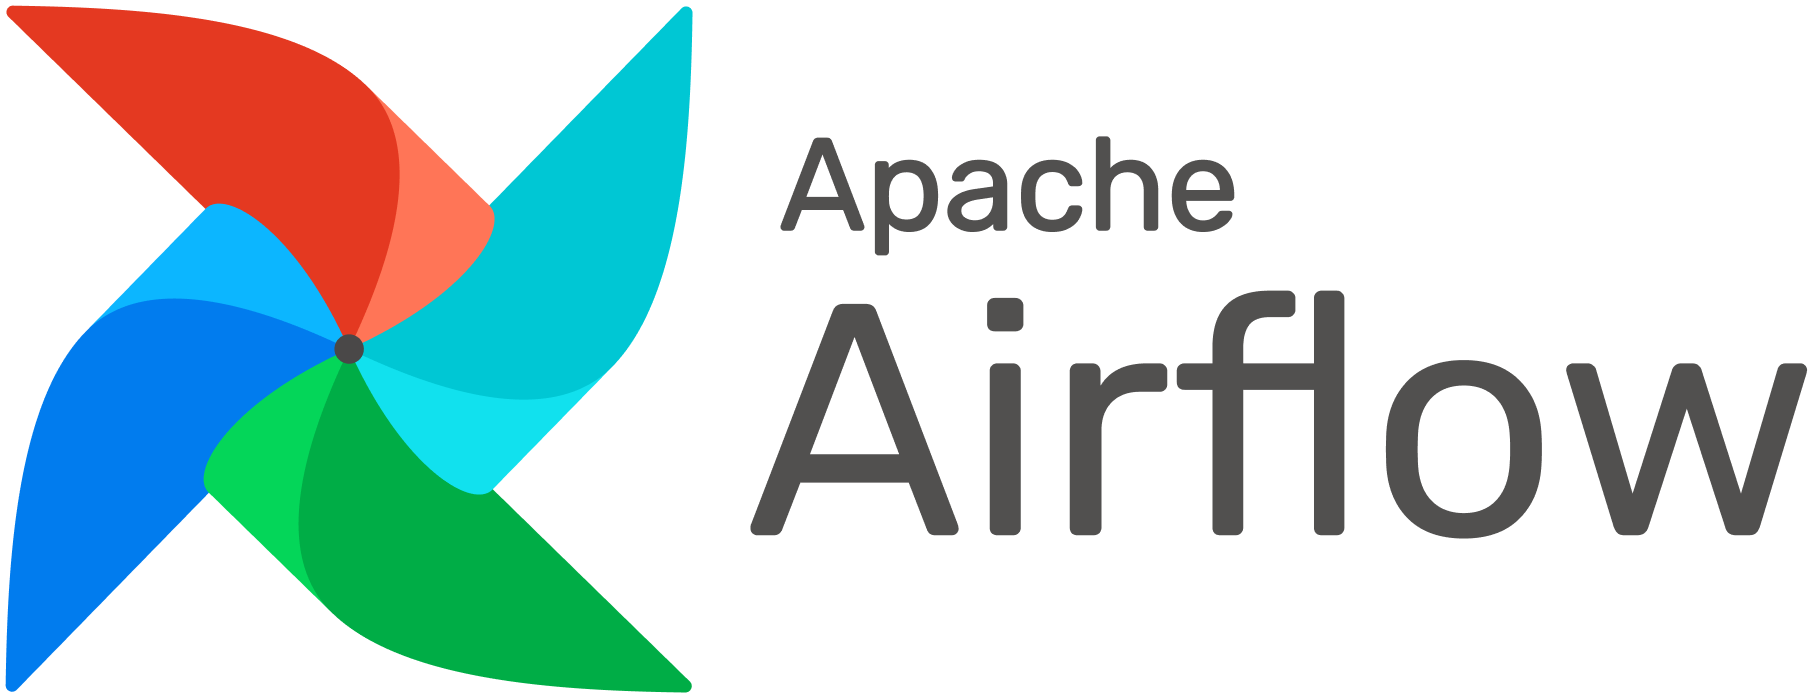 apache_airflow_logo.png